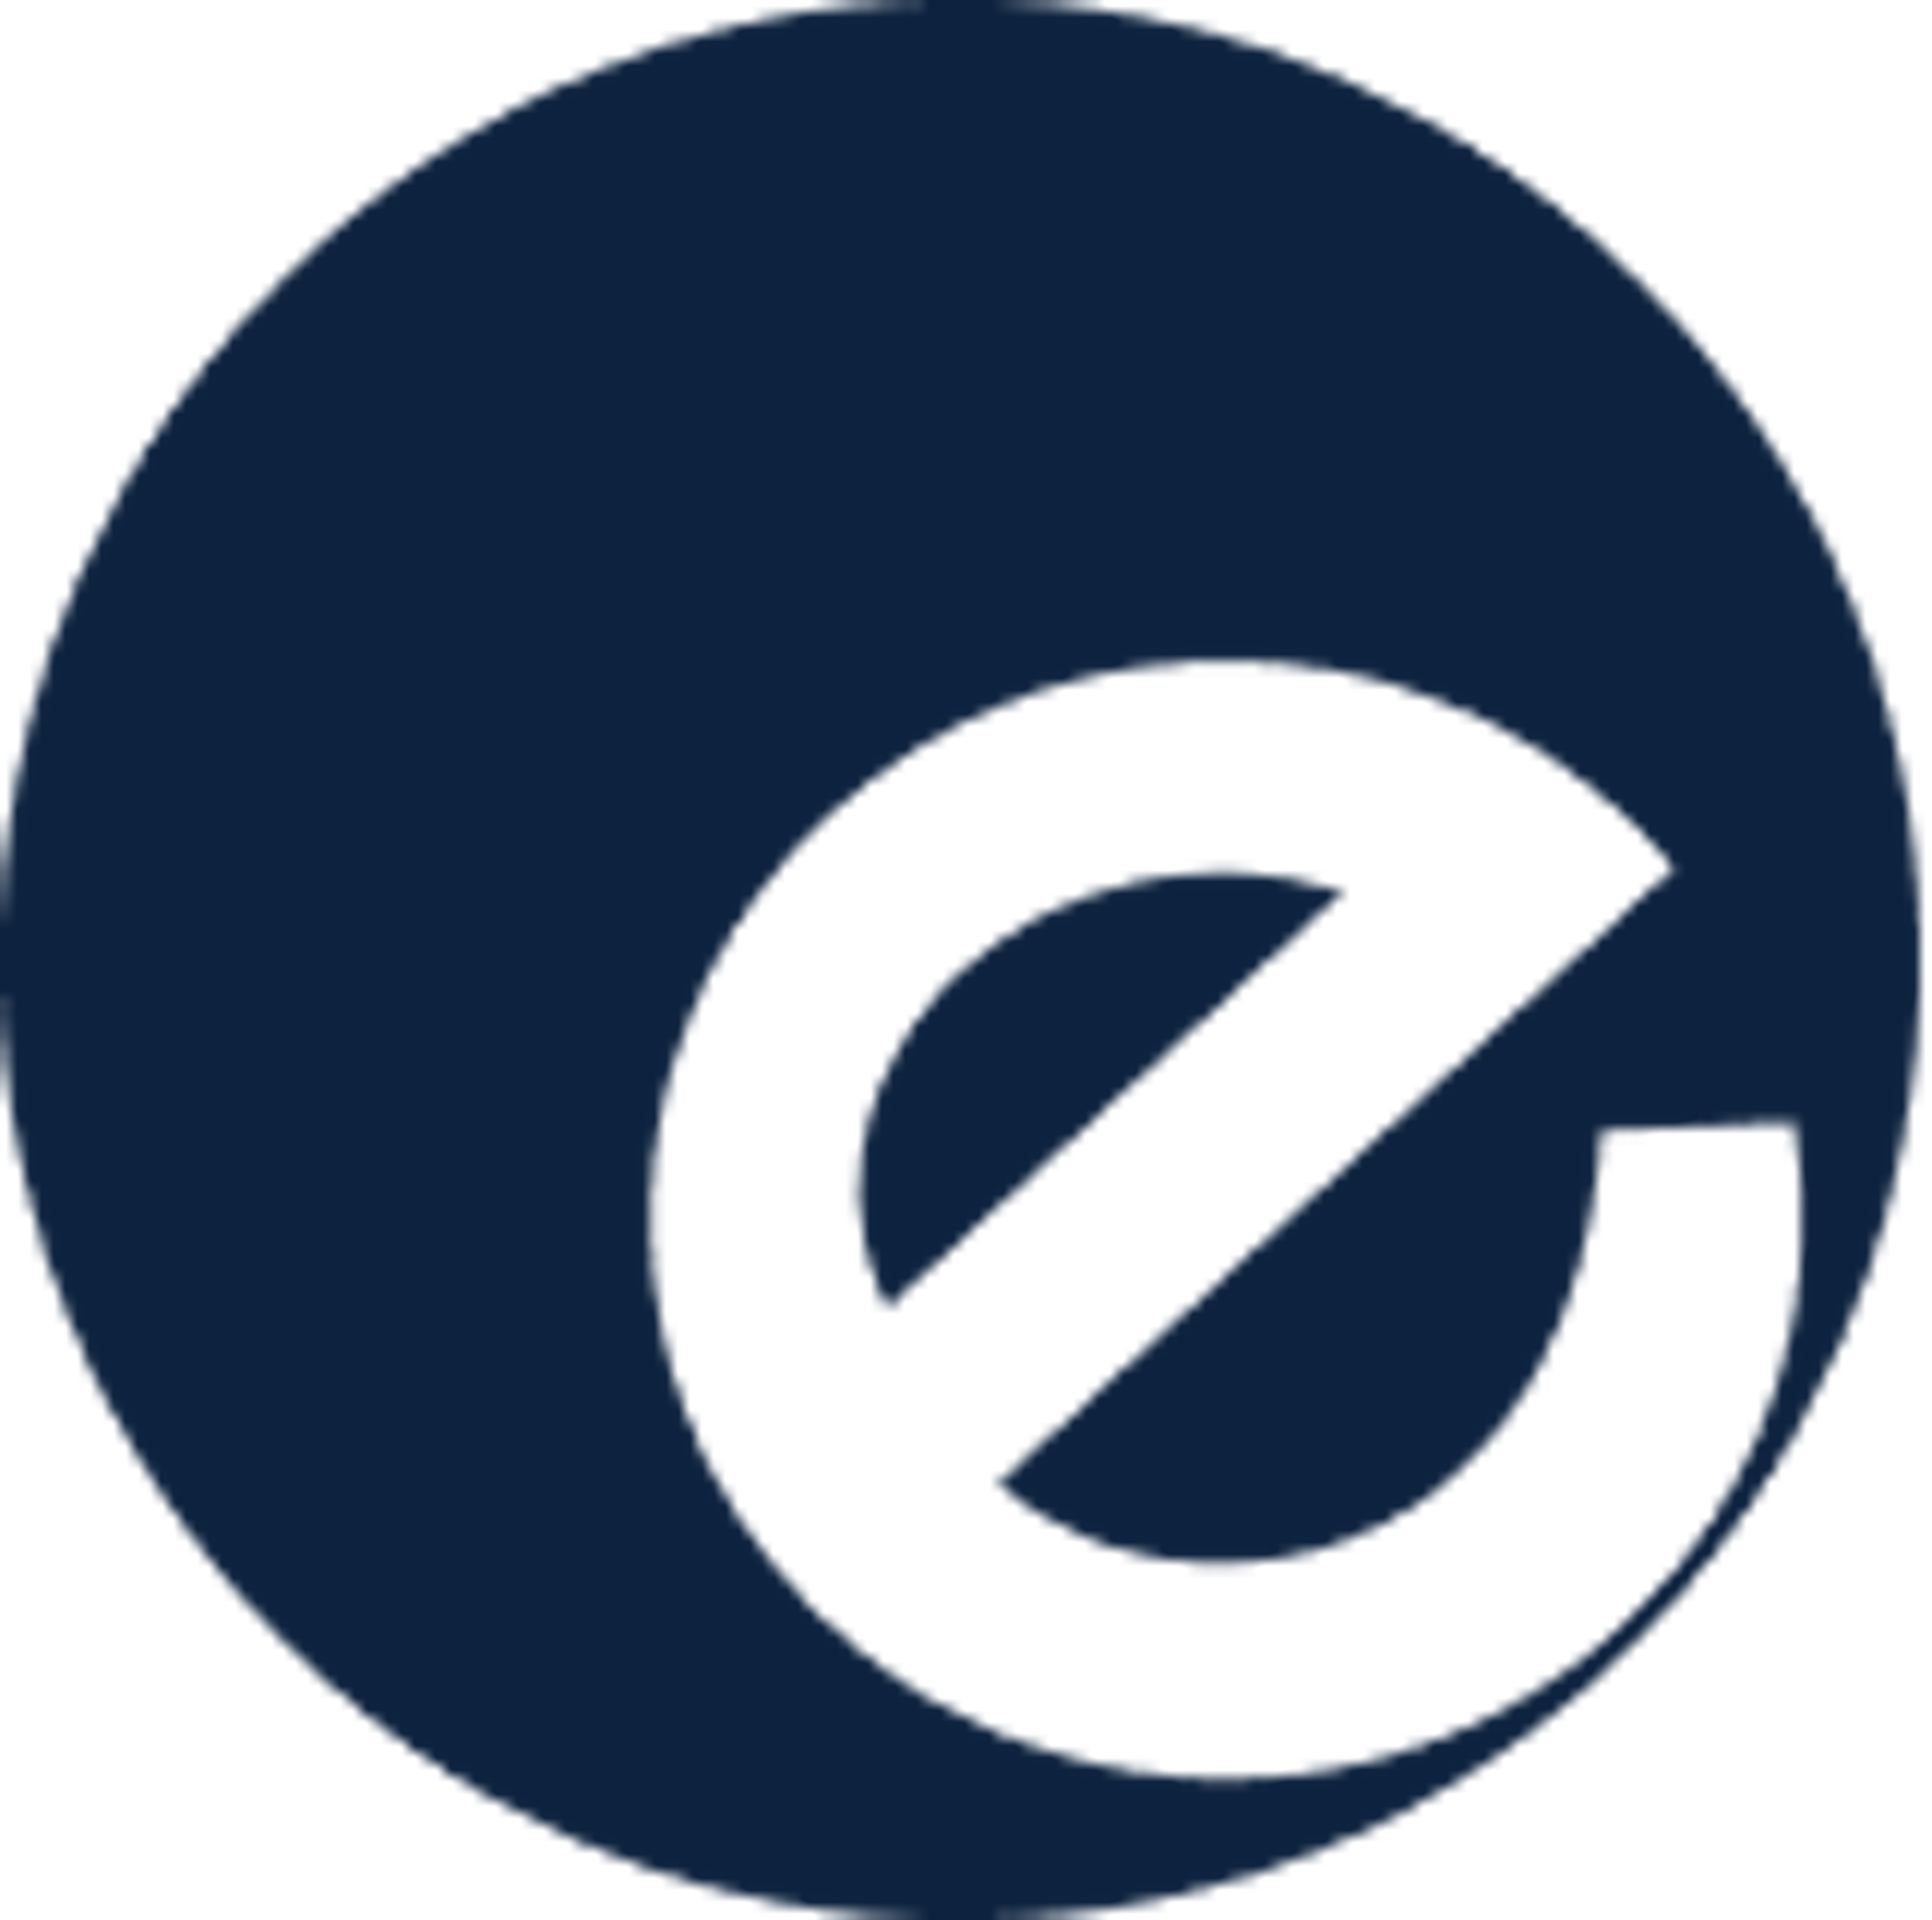 Epos Now Logo